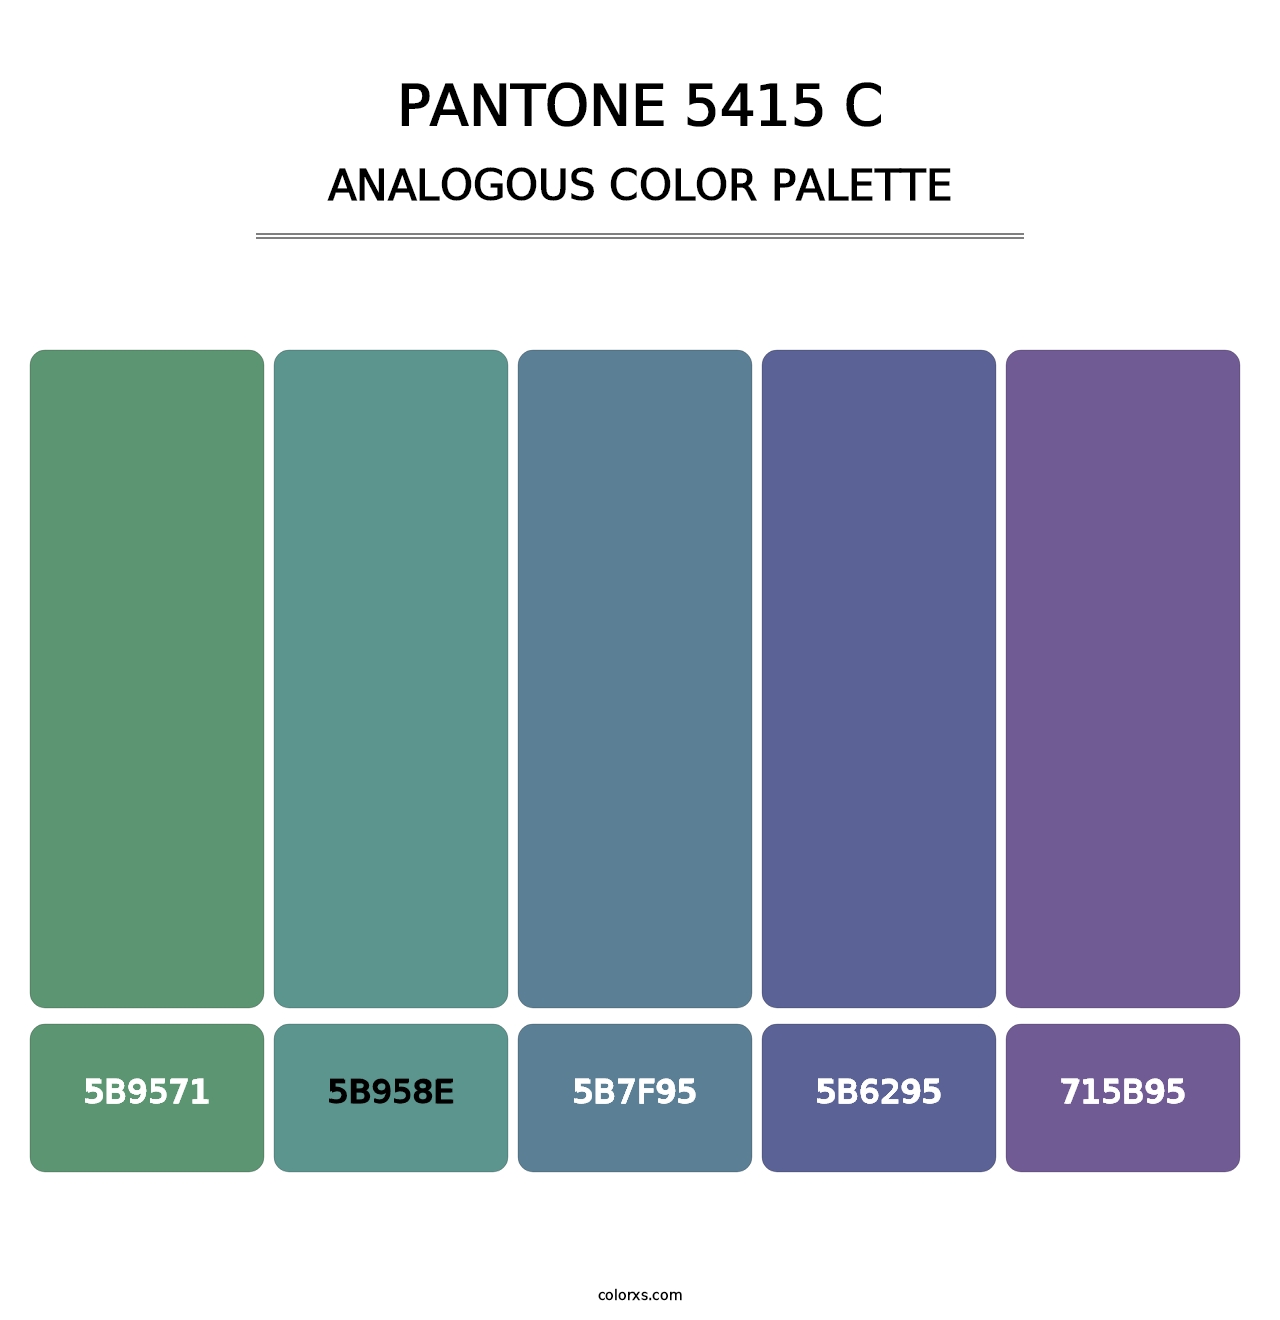 PANTONE 5415 C - Analogous Color Palette